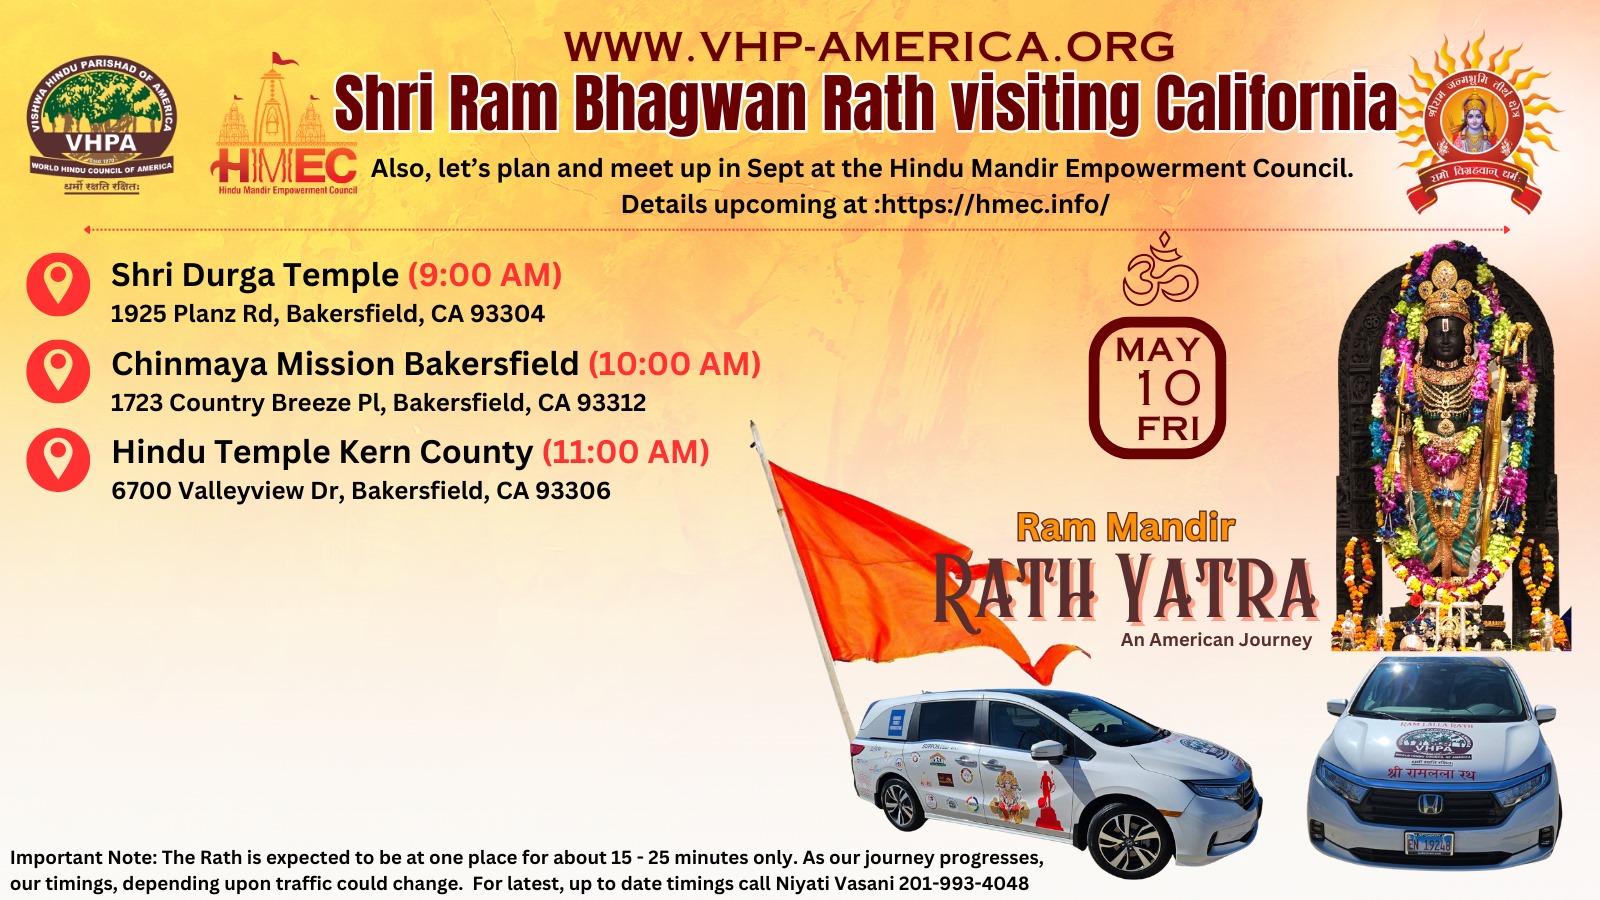 Shri Ram Bhagwan Rath visit